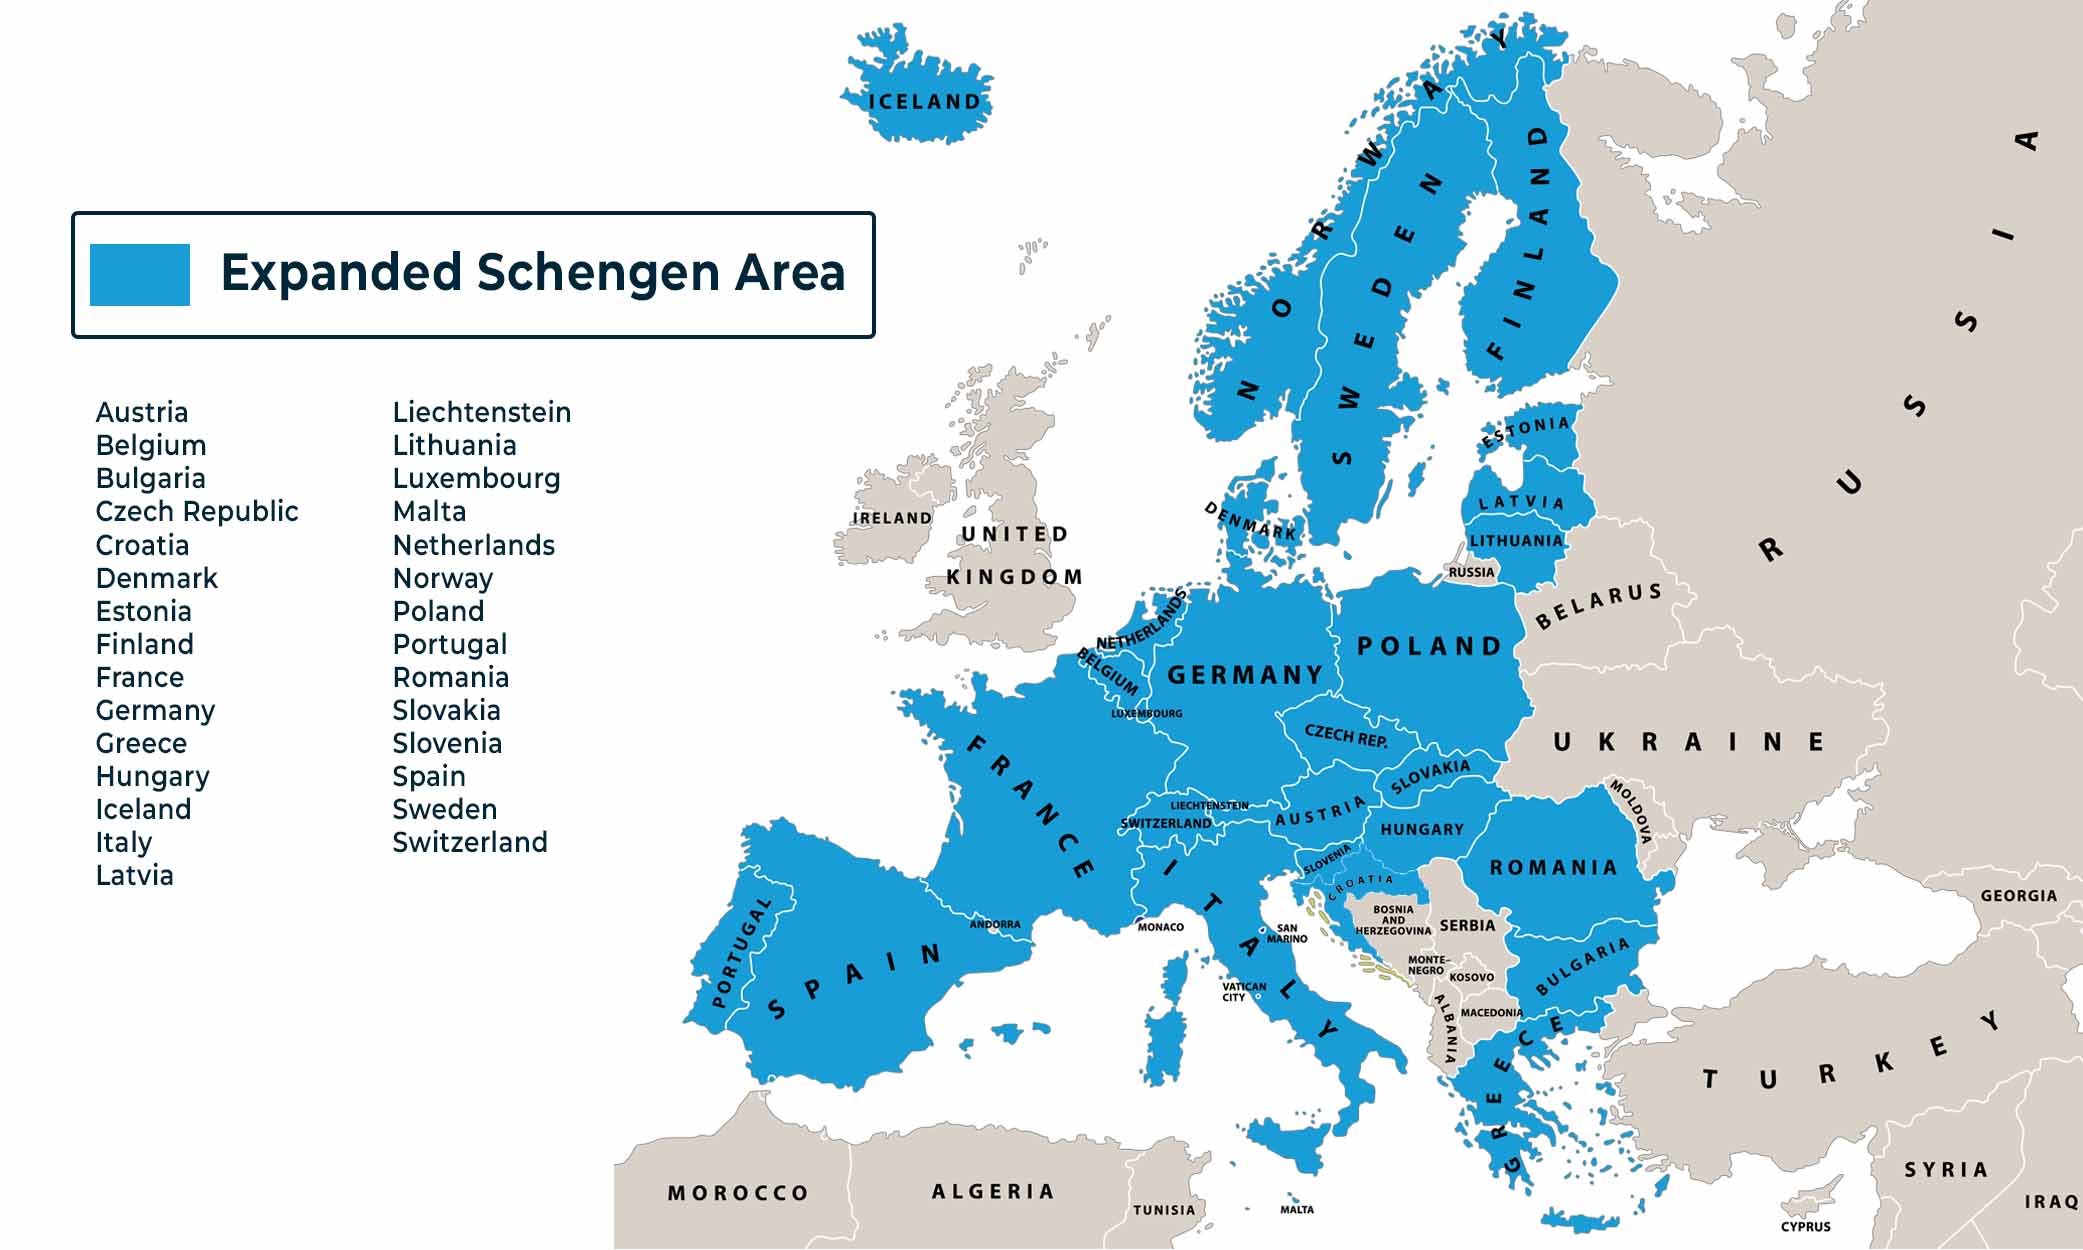 En savoir plus sur l'adhésion de la Bulgarie et de la Roumanie à l'espace Schengen.